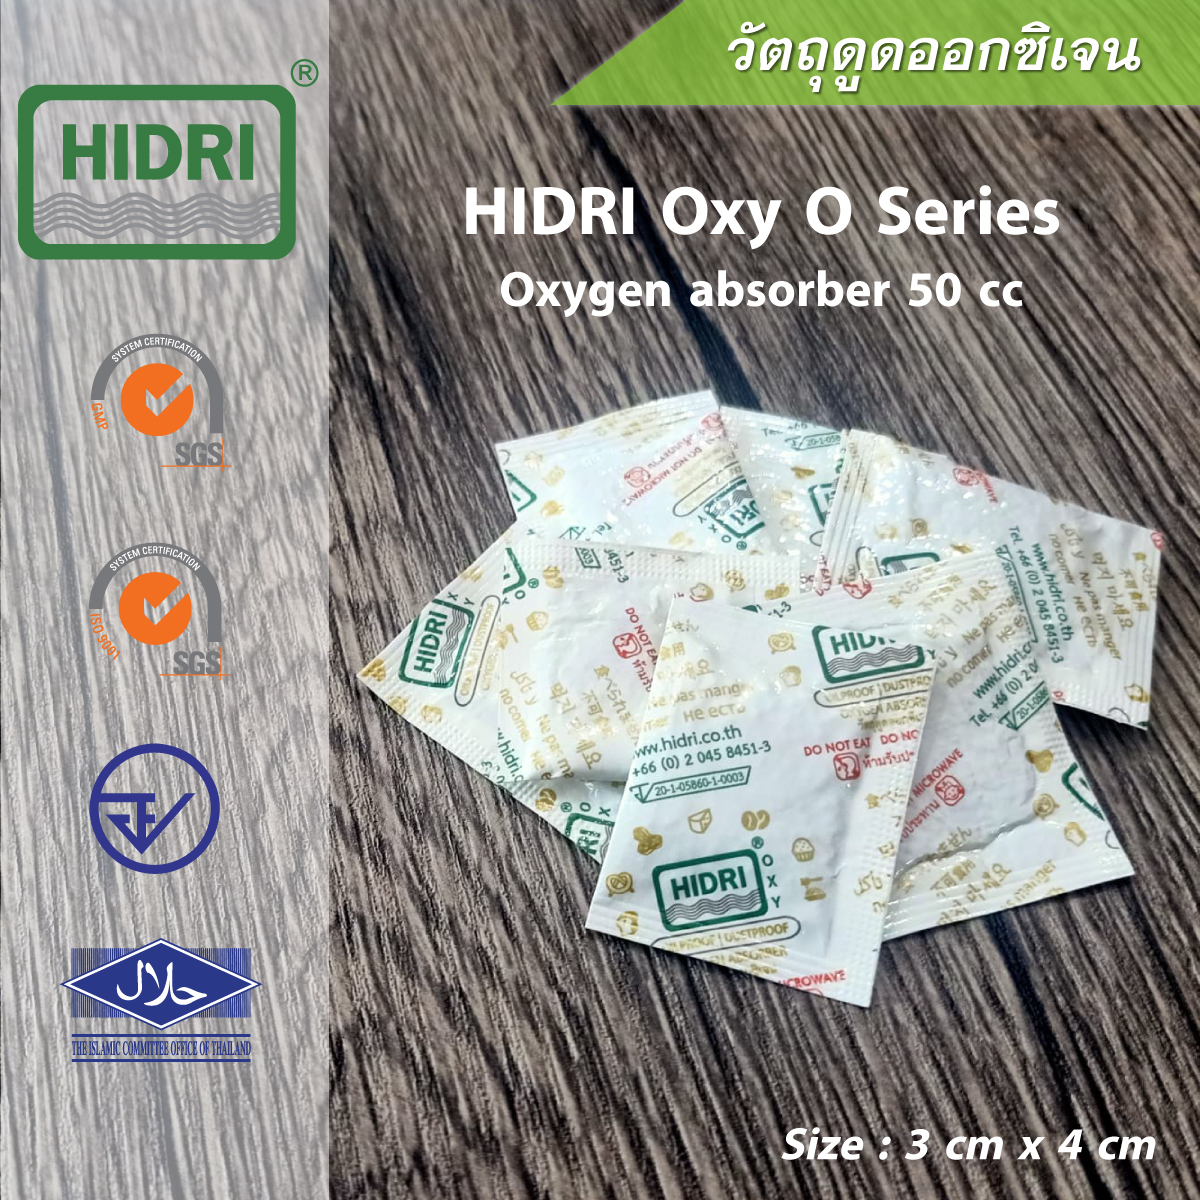 HIDRI Oxygen Absorber O Series 50 cc